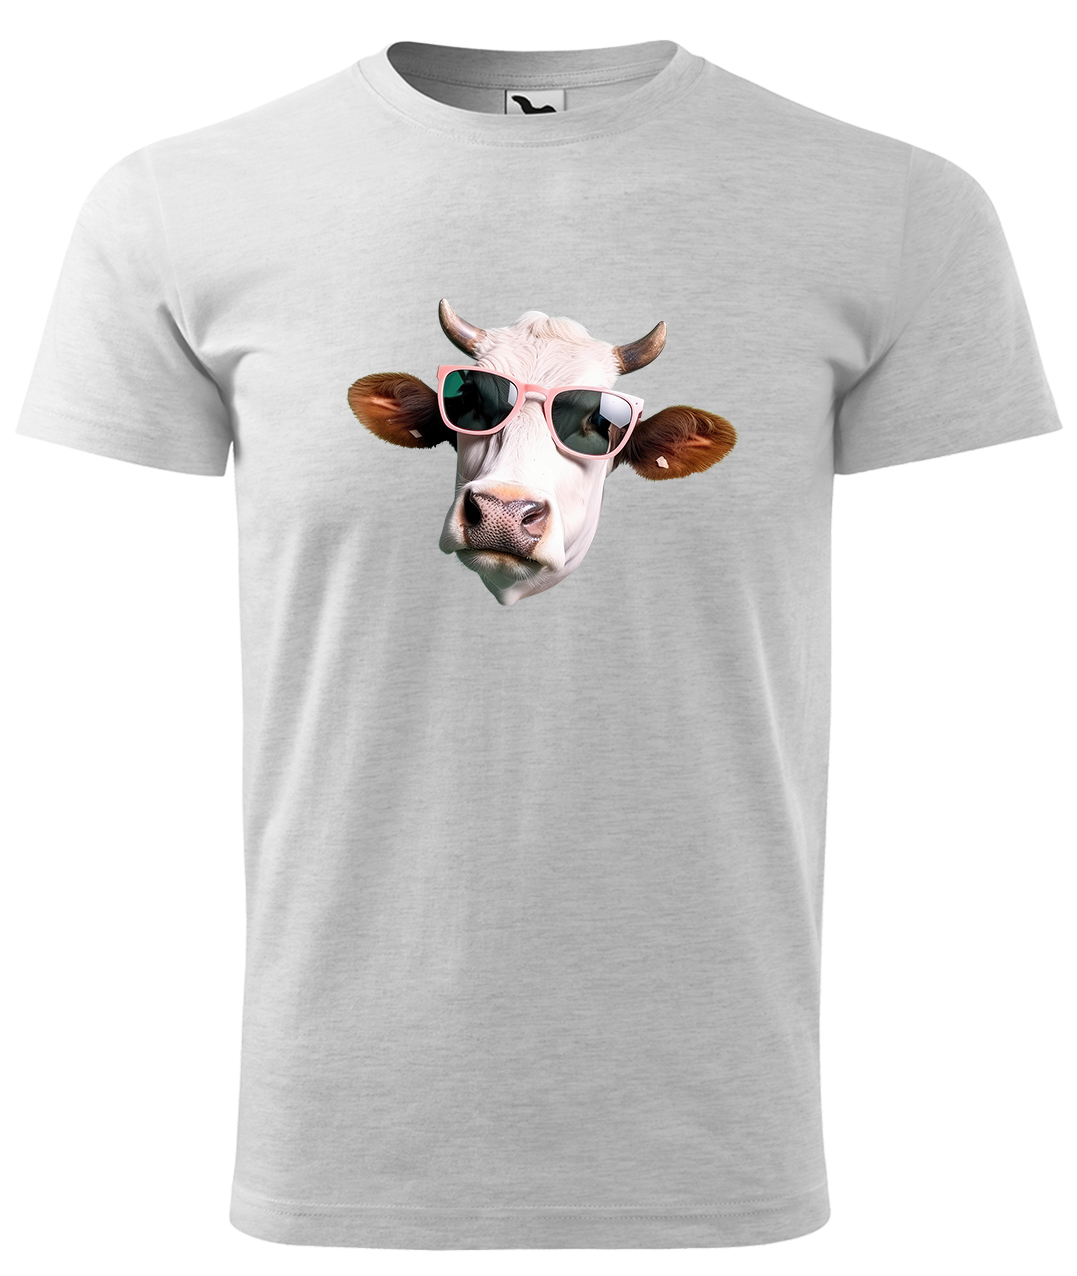 Dětské tričko s krávou - Kráva v brýlích Velikost: 4 roky / 110 cm, Barva: Světle šedý melír (03), Délka rukávu: Krátký rukáv